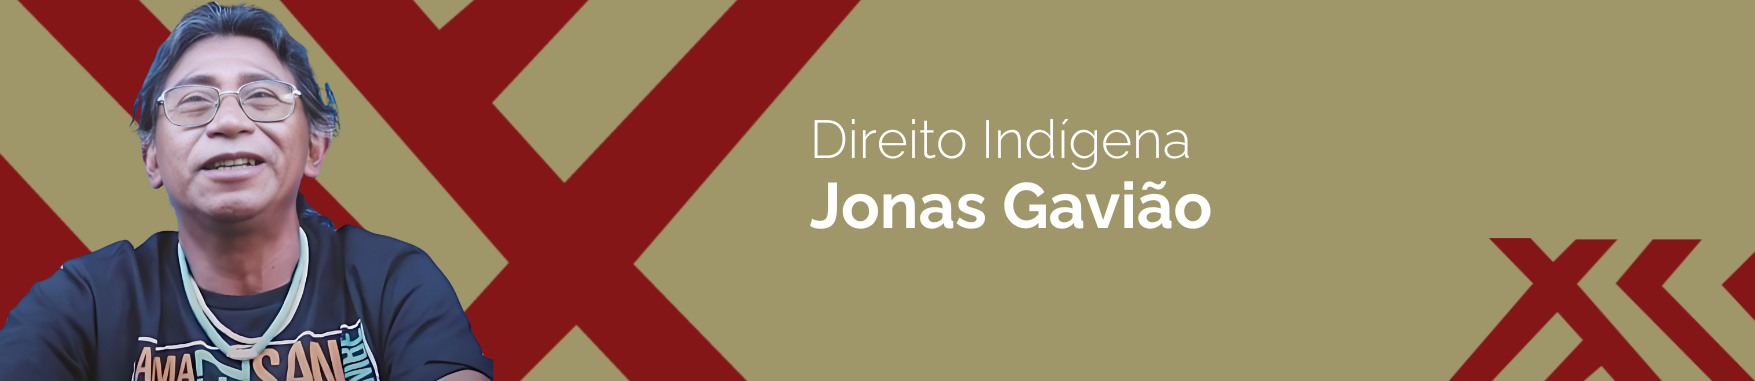 Banner com a imagem do Jonas Gavião